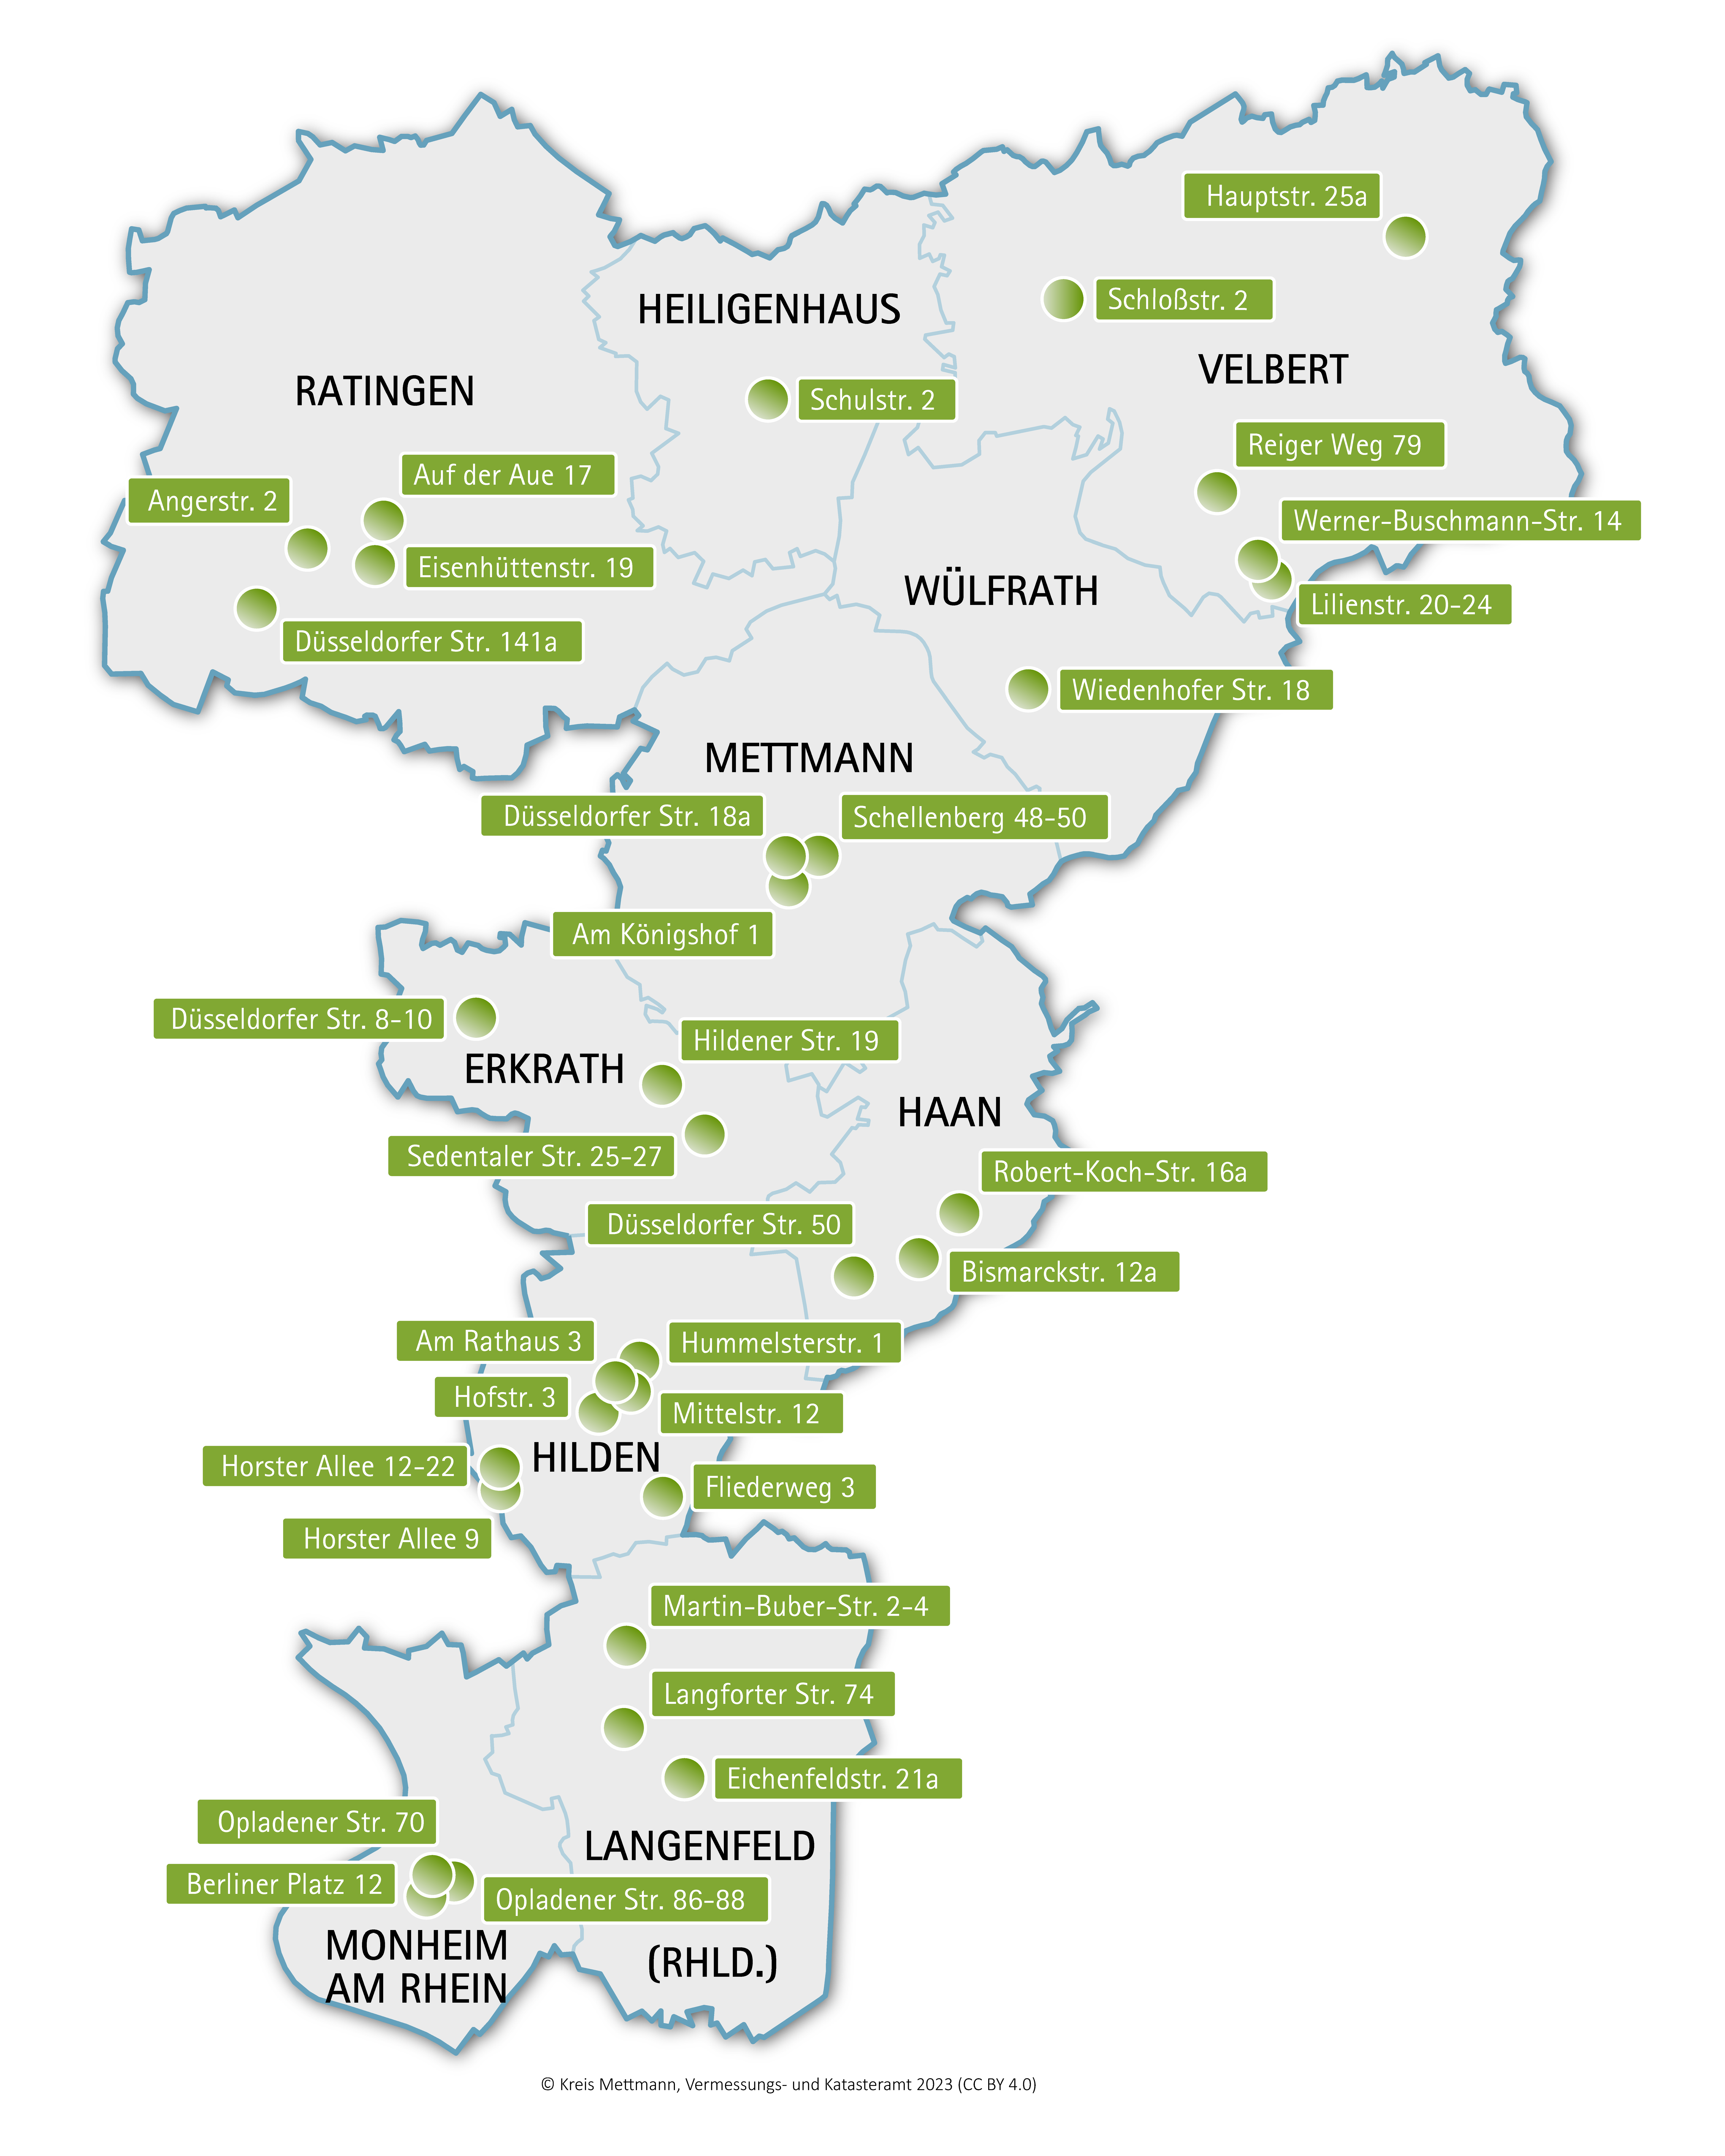 Bild vergrößern: Übersichtskarte der Angebote des Servicewohnens im Kreis Mettmann. Die Standorte werden durch einen Punkt markiert.